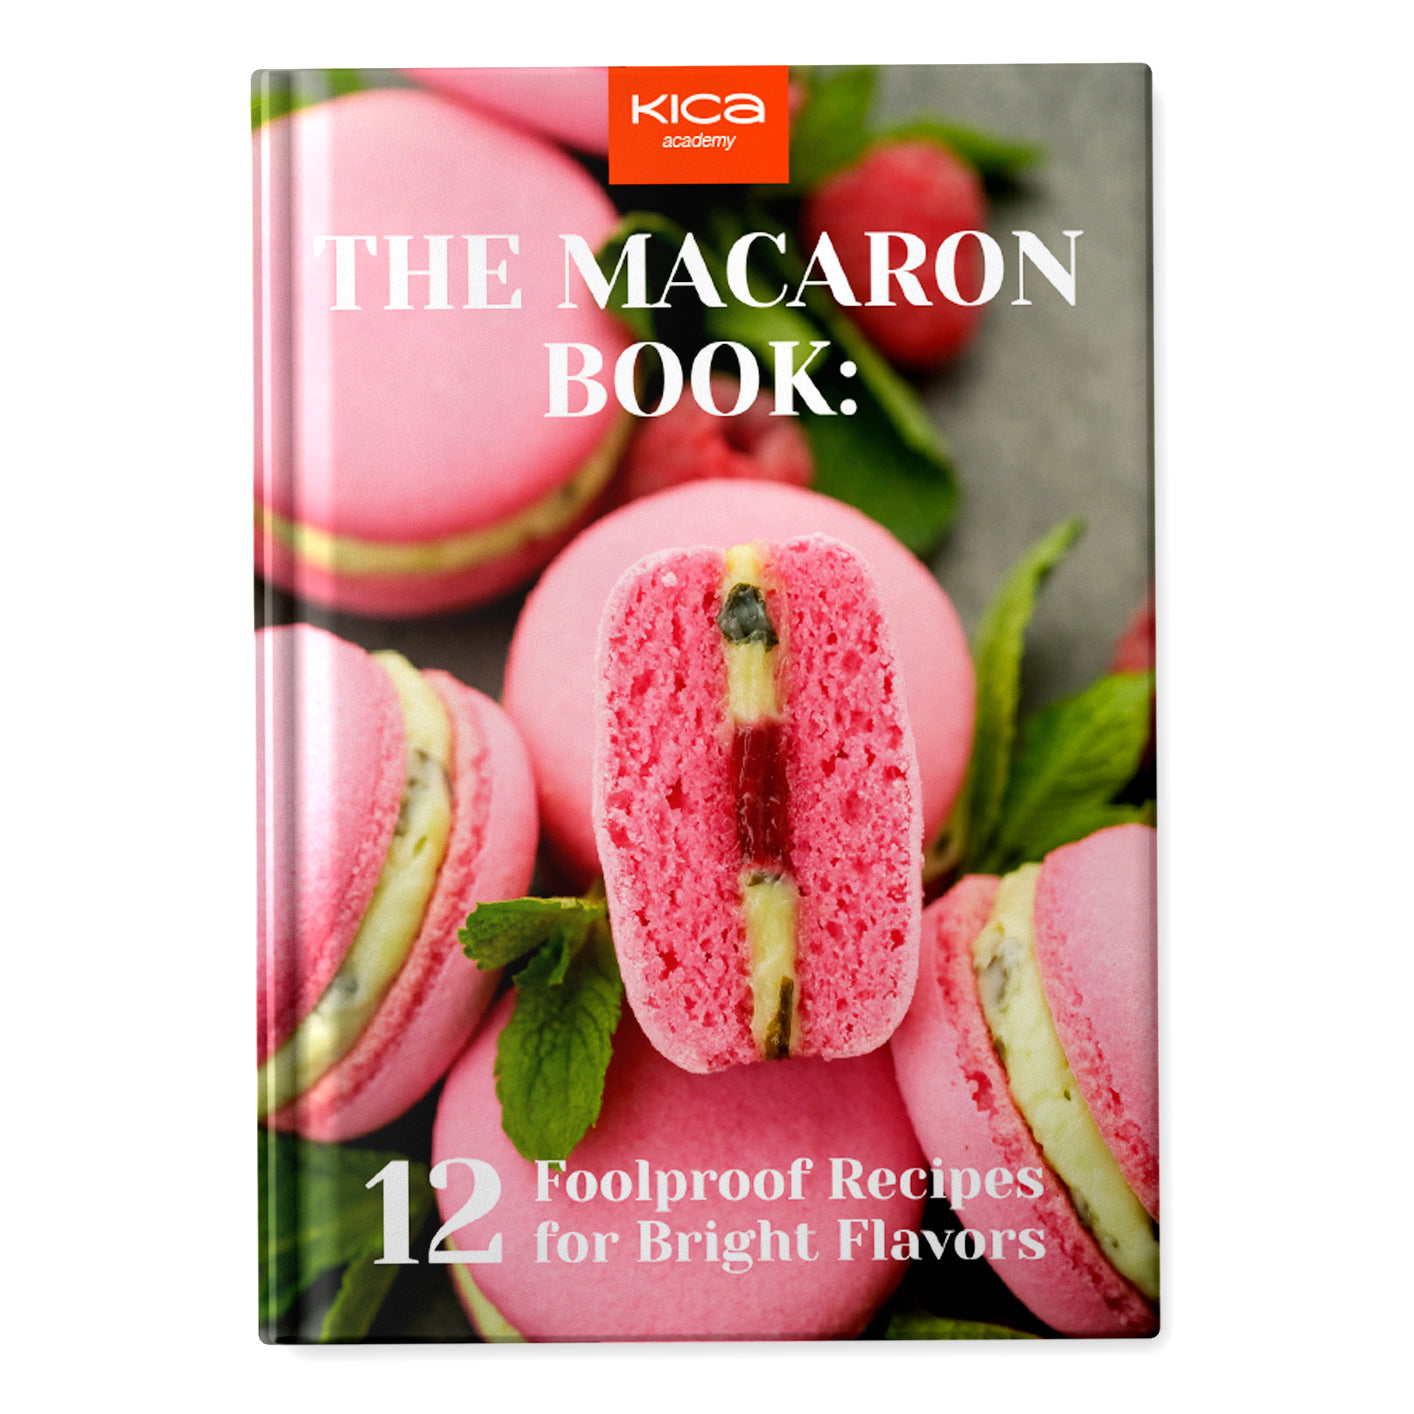 The Macaron Book